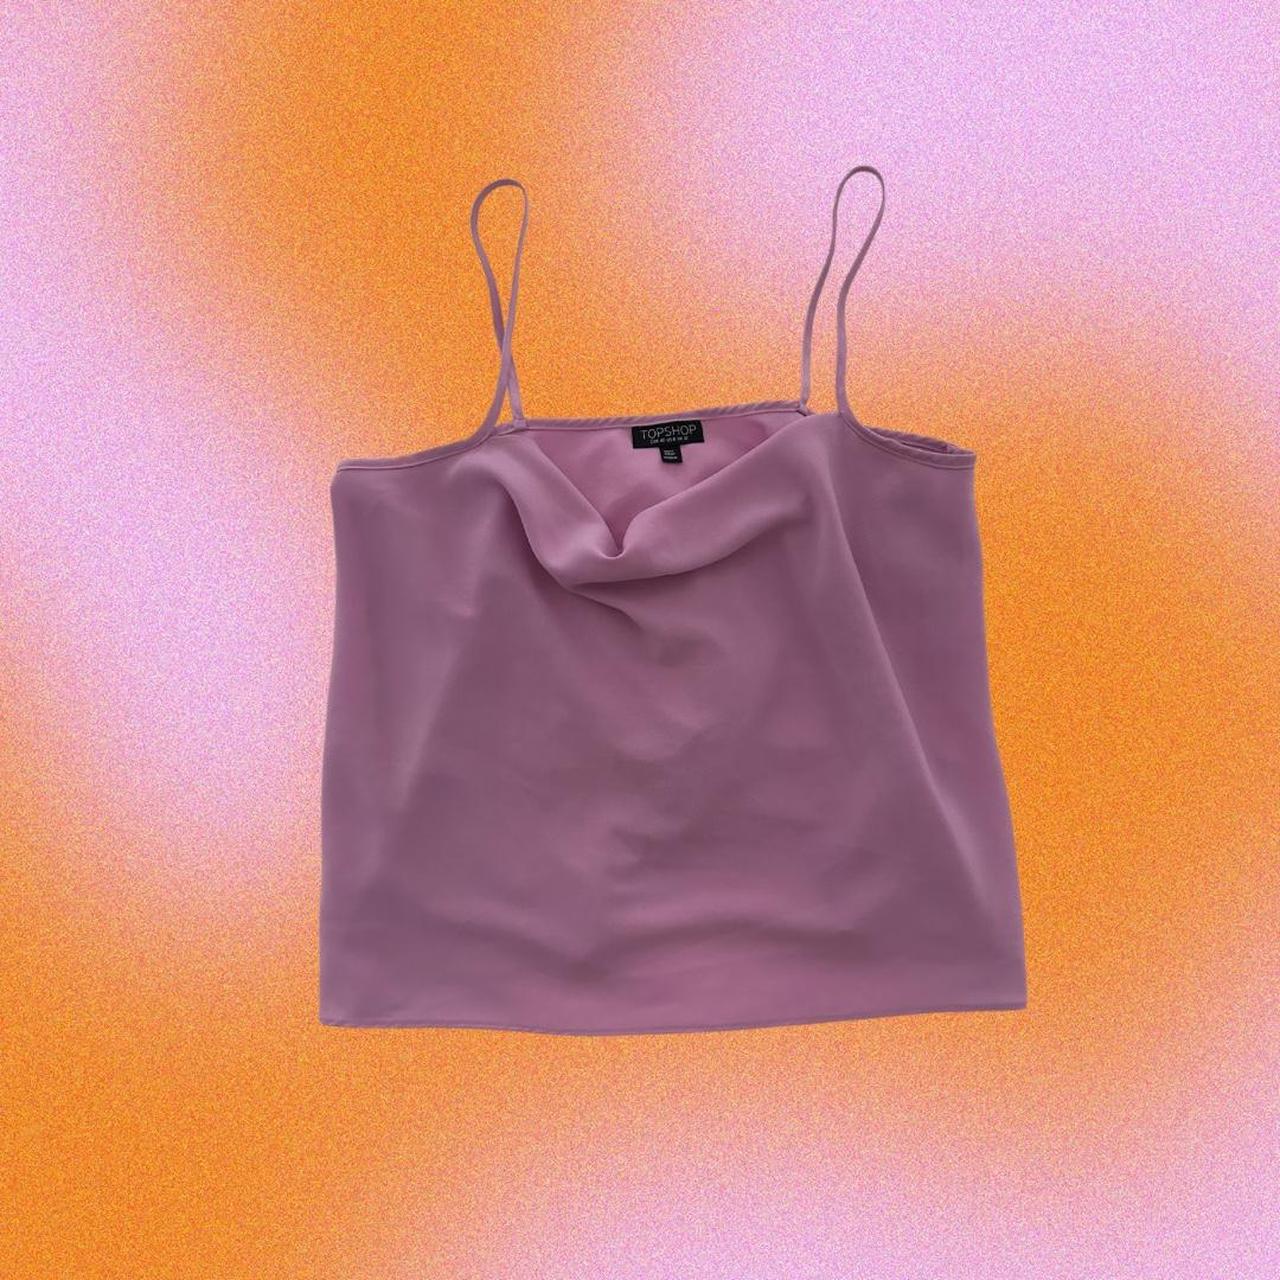 Topshop Women's Pink Vest | Depop